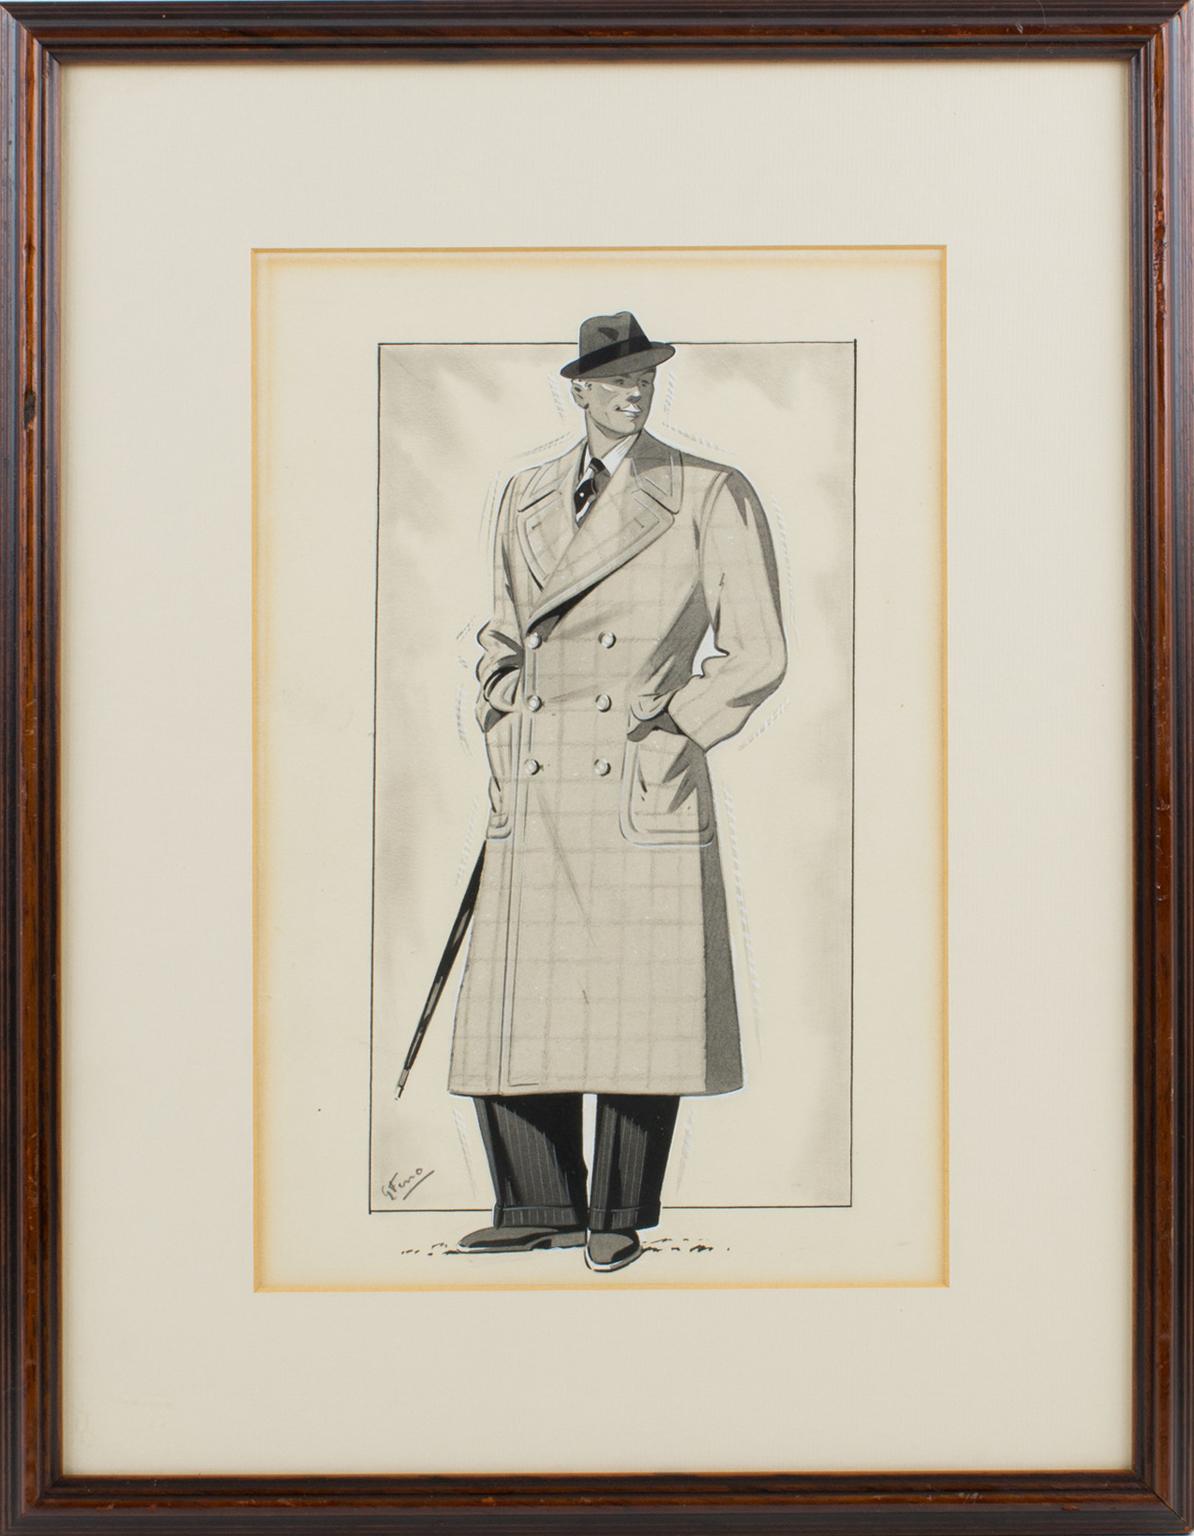 Original Art-Deco-Modezeichnung, Tusche und Lavierung auf Vellum-Papier des französischen Künstlers G. Ferro. Das Kunstwerk zeigt ein stilvolles männliches Modell mit einem typischen Art-déco-Mantel. Das Stück ist in der unteren linken Ecke mit G.